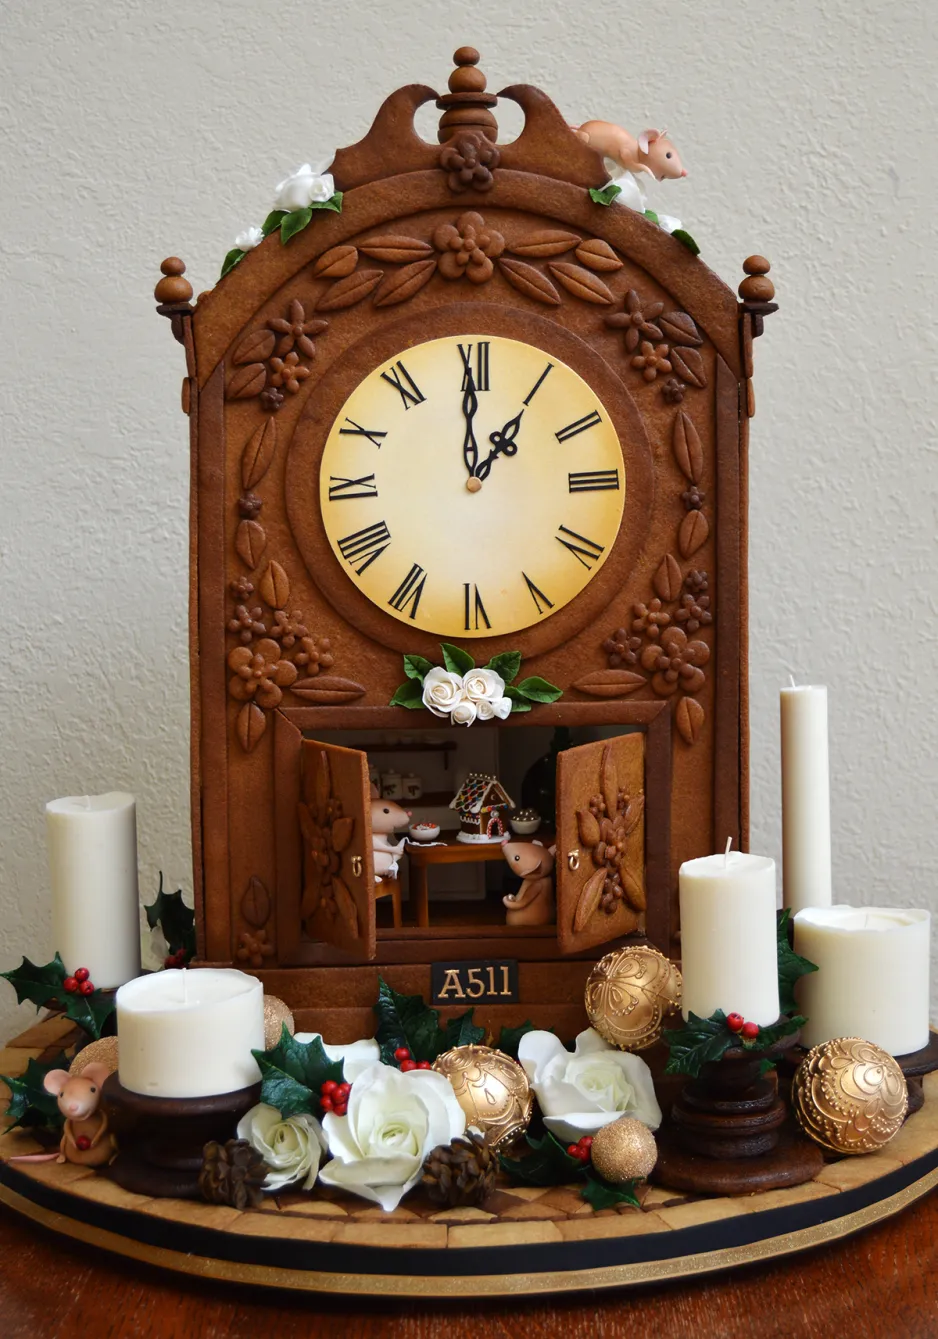 Une horloge à l’allure ancienne entièrement réalisée en pain d’épice avec des décorations en sucre.